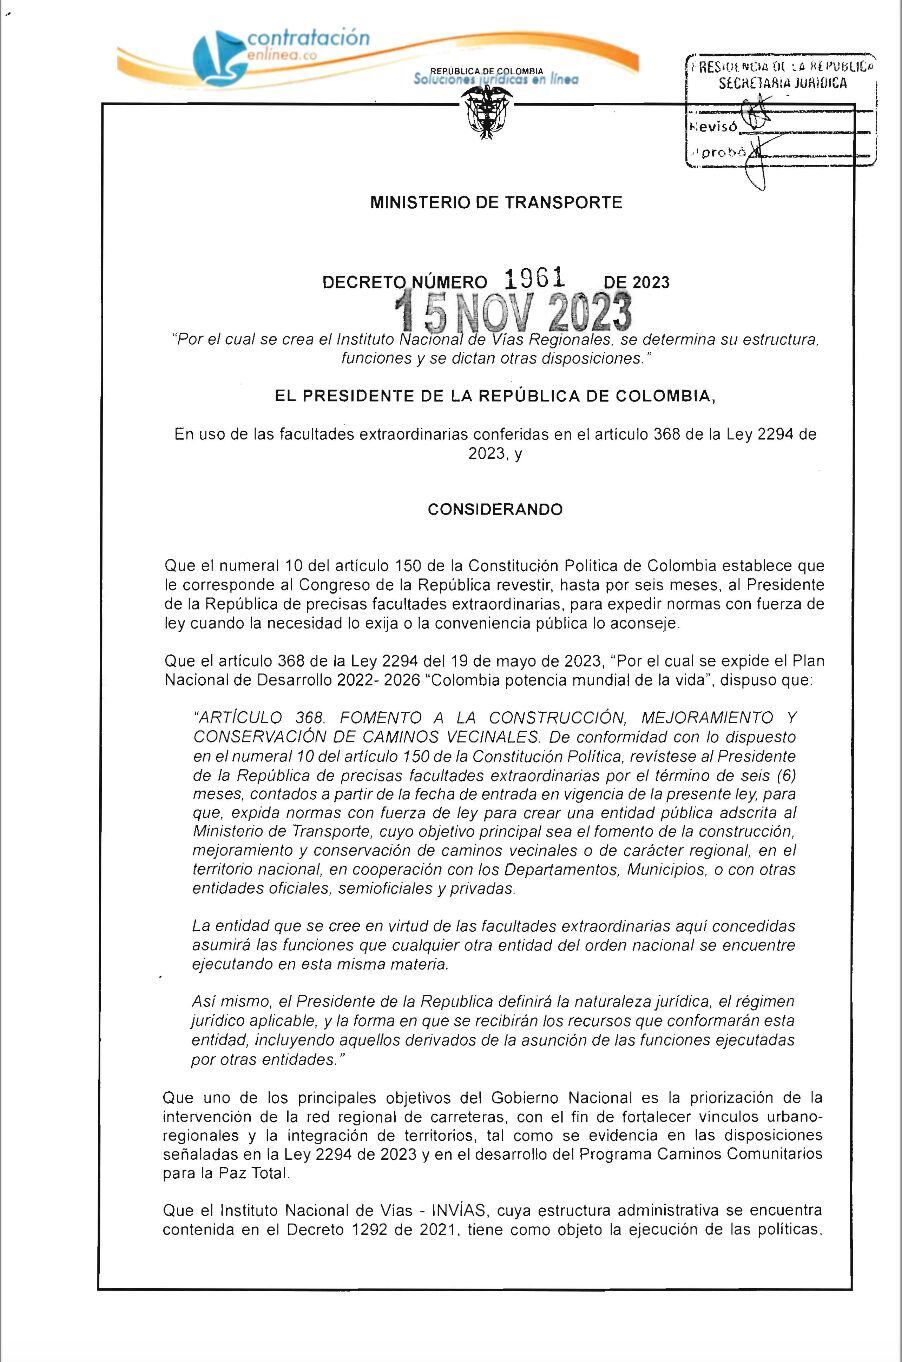 Decreto que crea el Instituto Nacional de Vías Regionales.